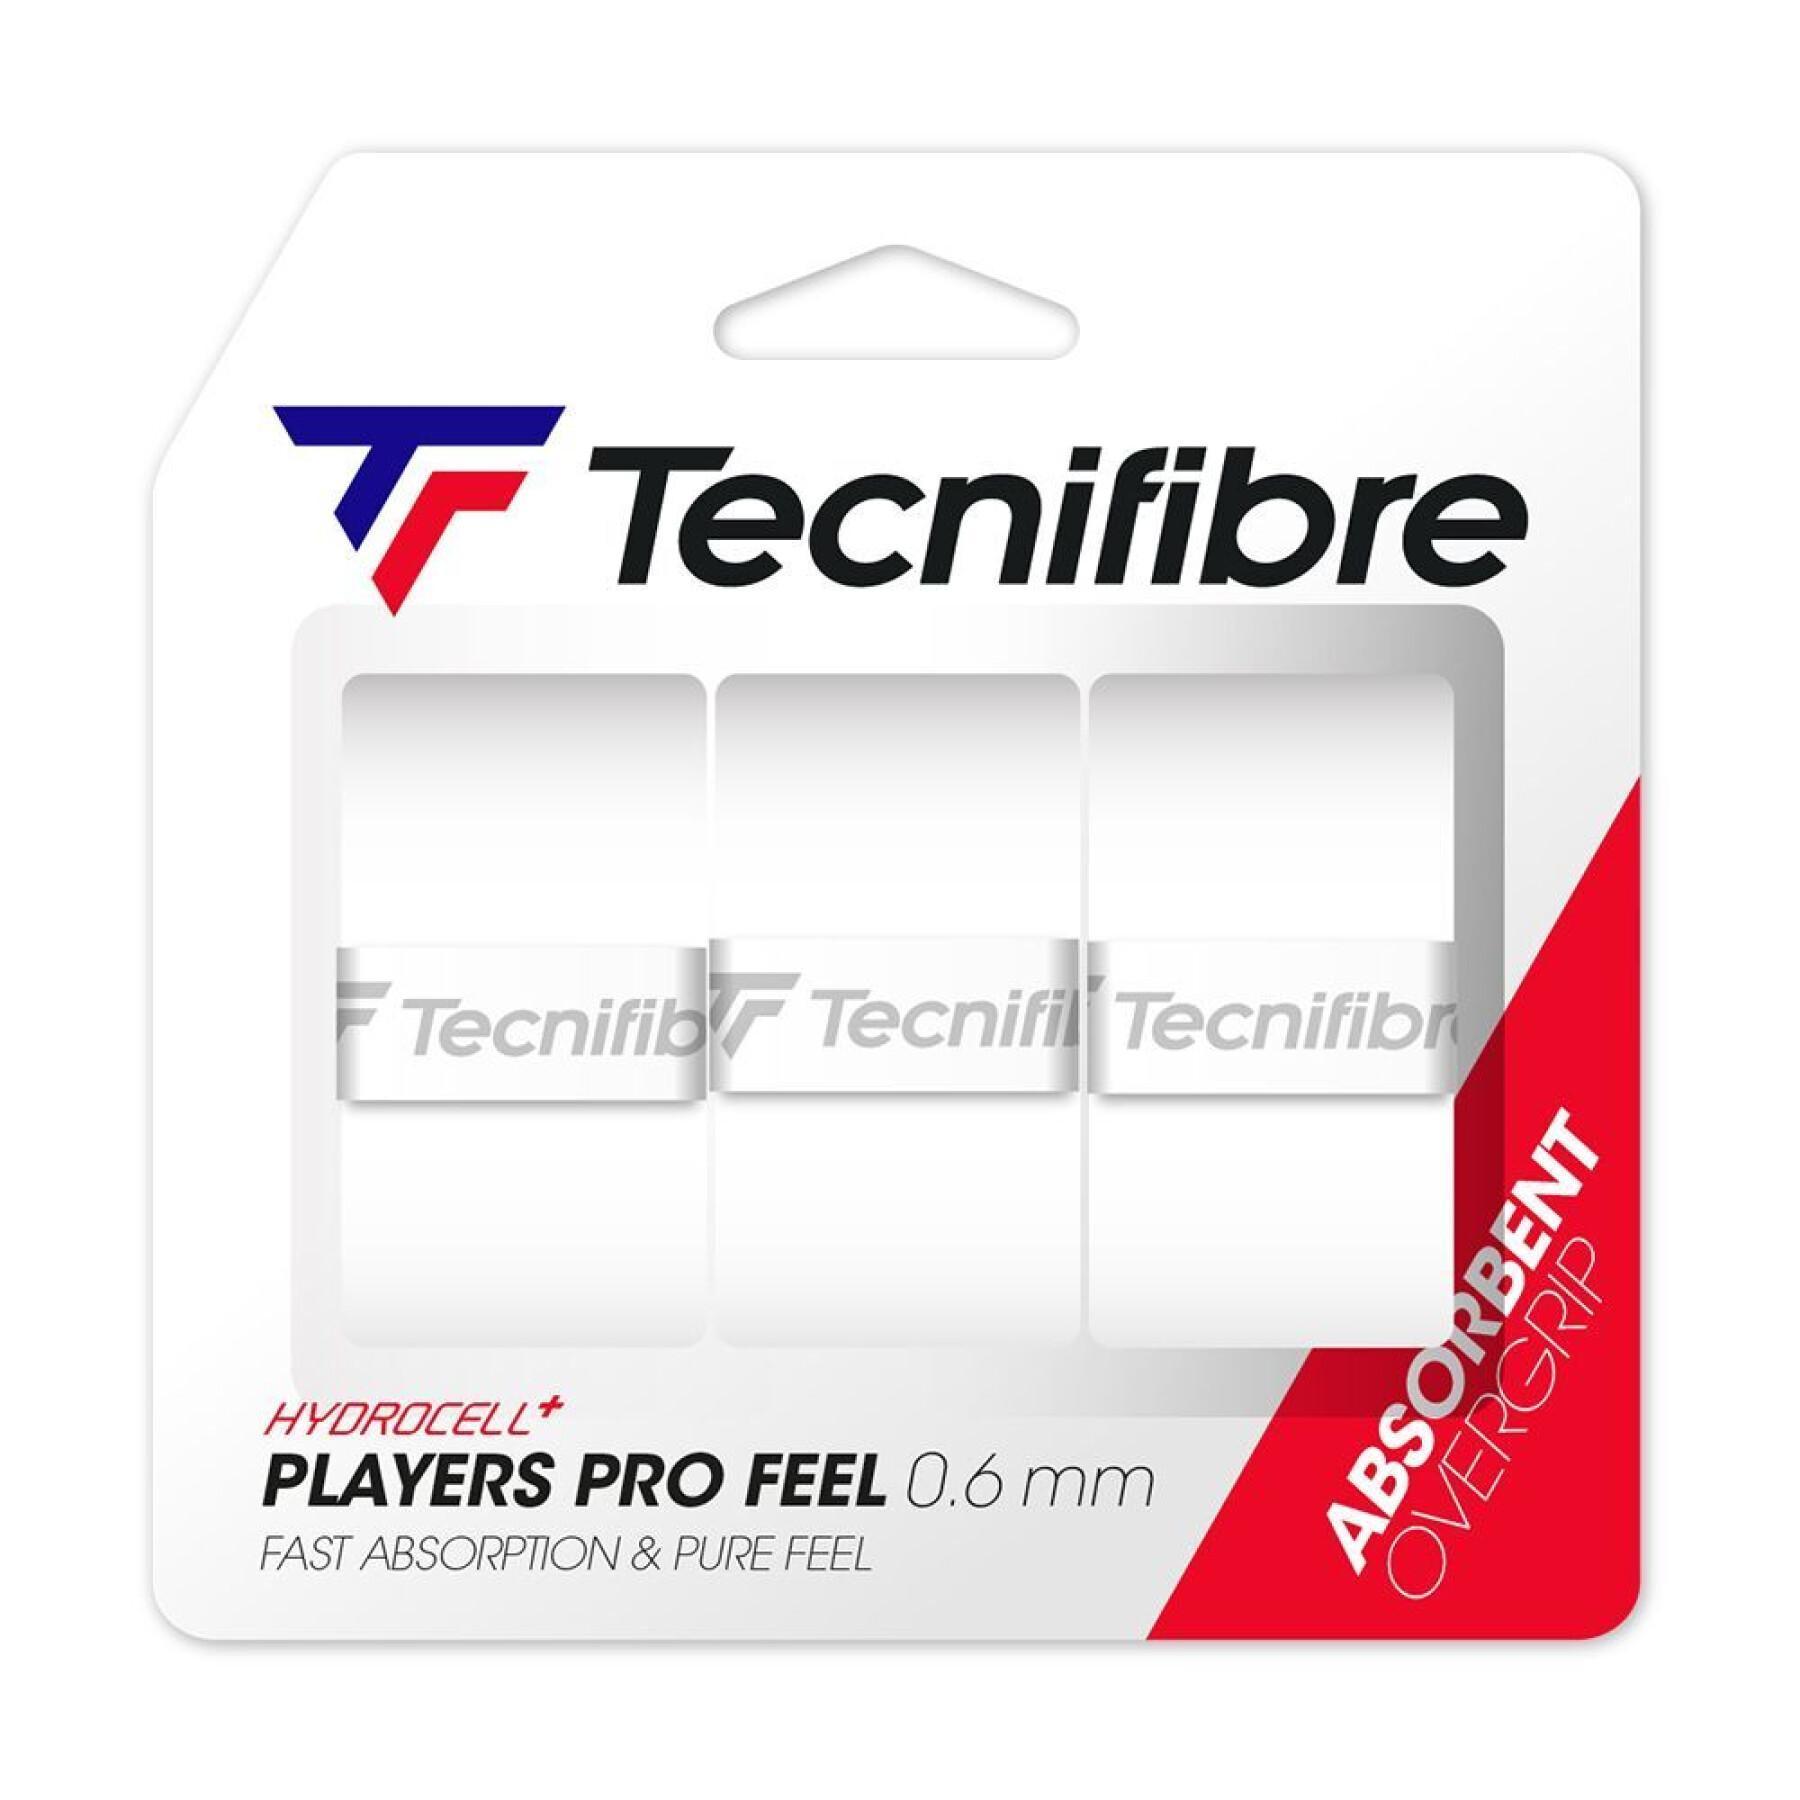 Sobregrip de tenis Tecnifibre Players Pro Feel